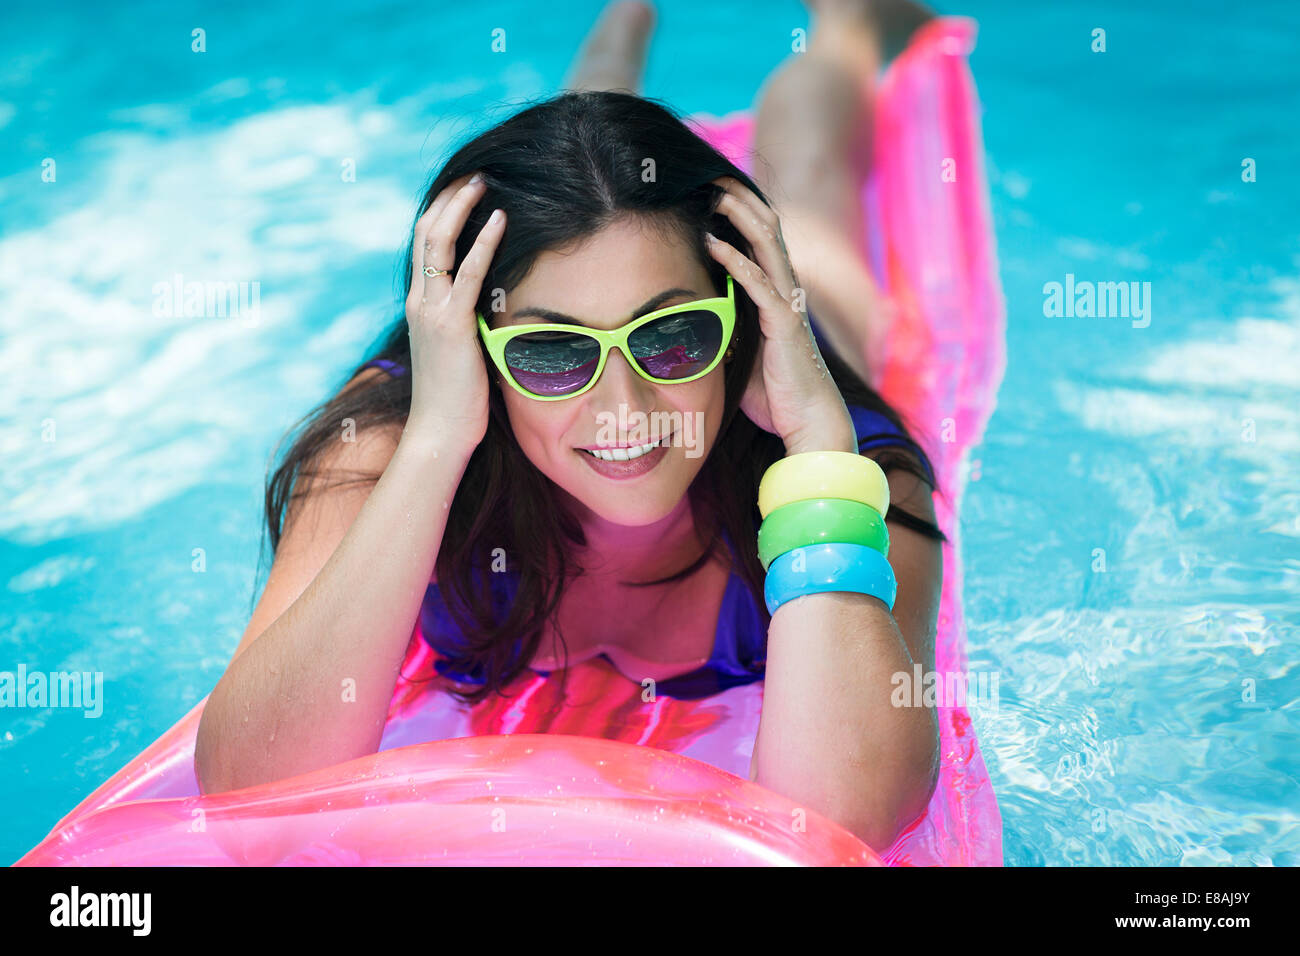 Porträt Der Jungen Frau Auf Luftmatratze Im Pool Sonnenbaden Stockfotografie Alamy 